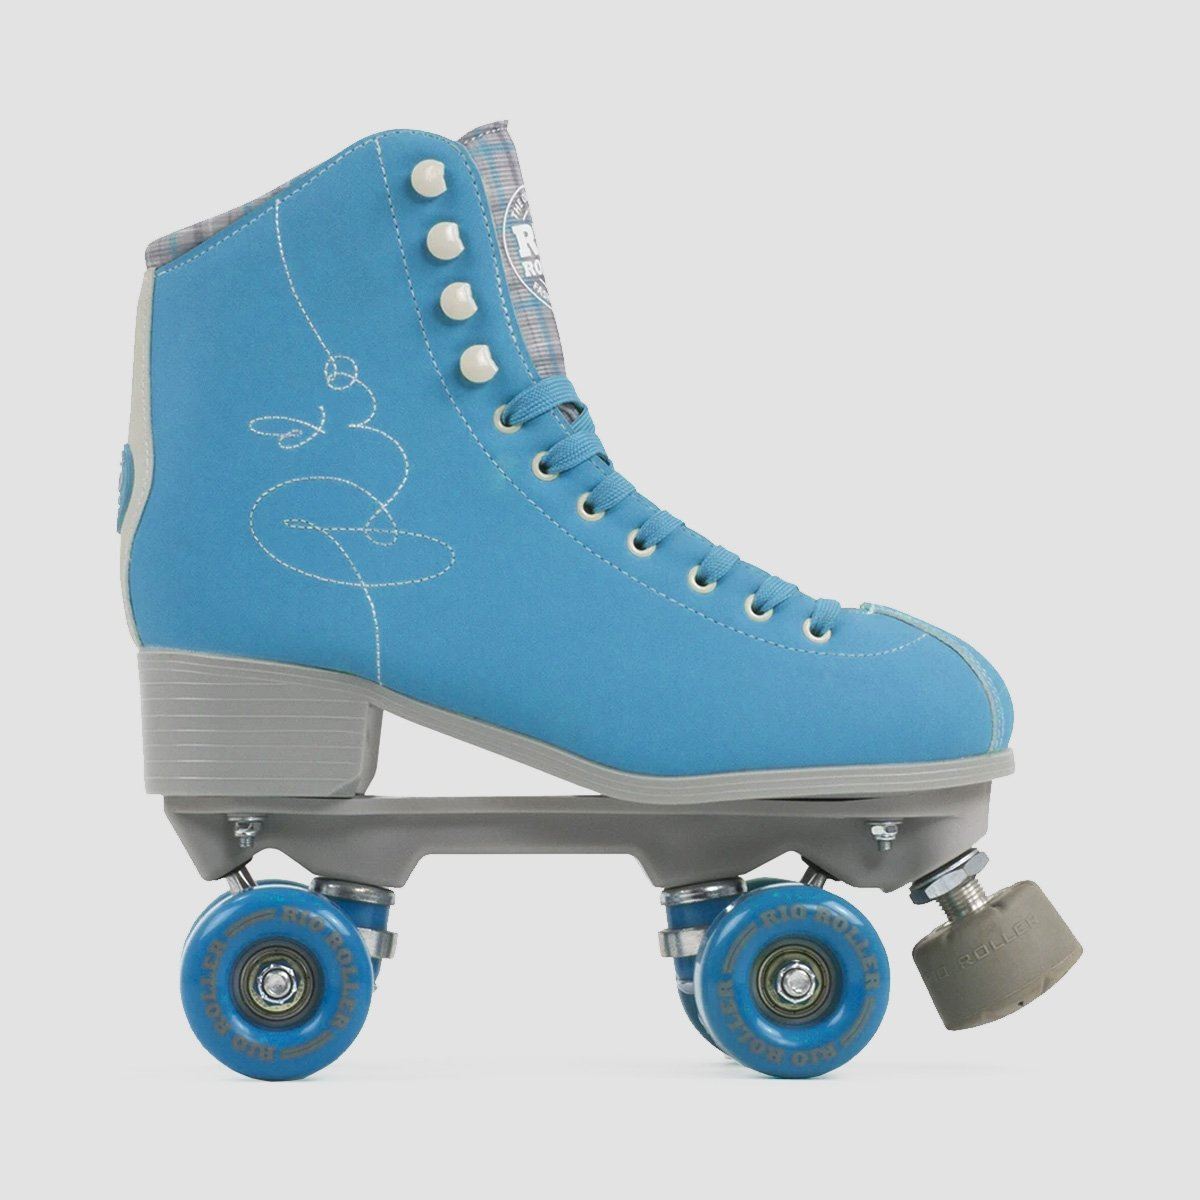 Rio Roller Signature Quad Skates Blue